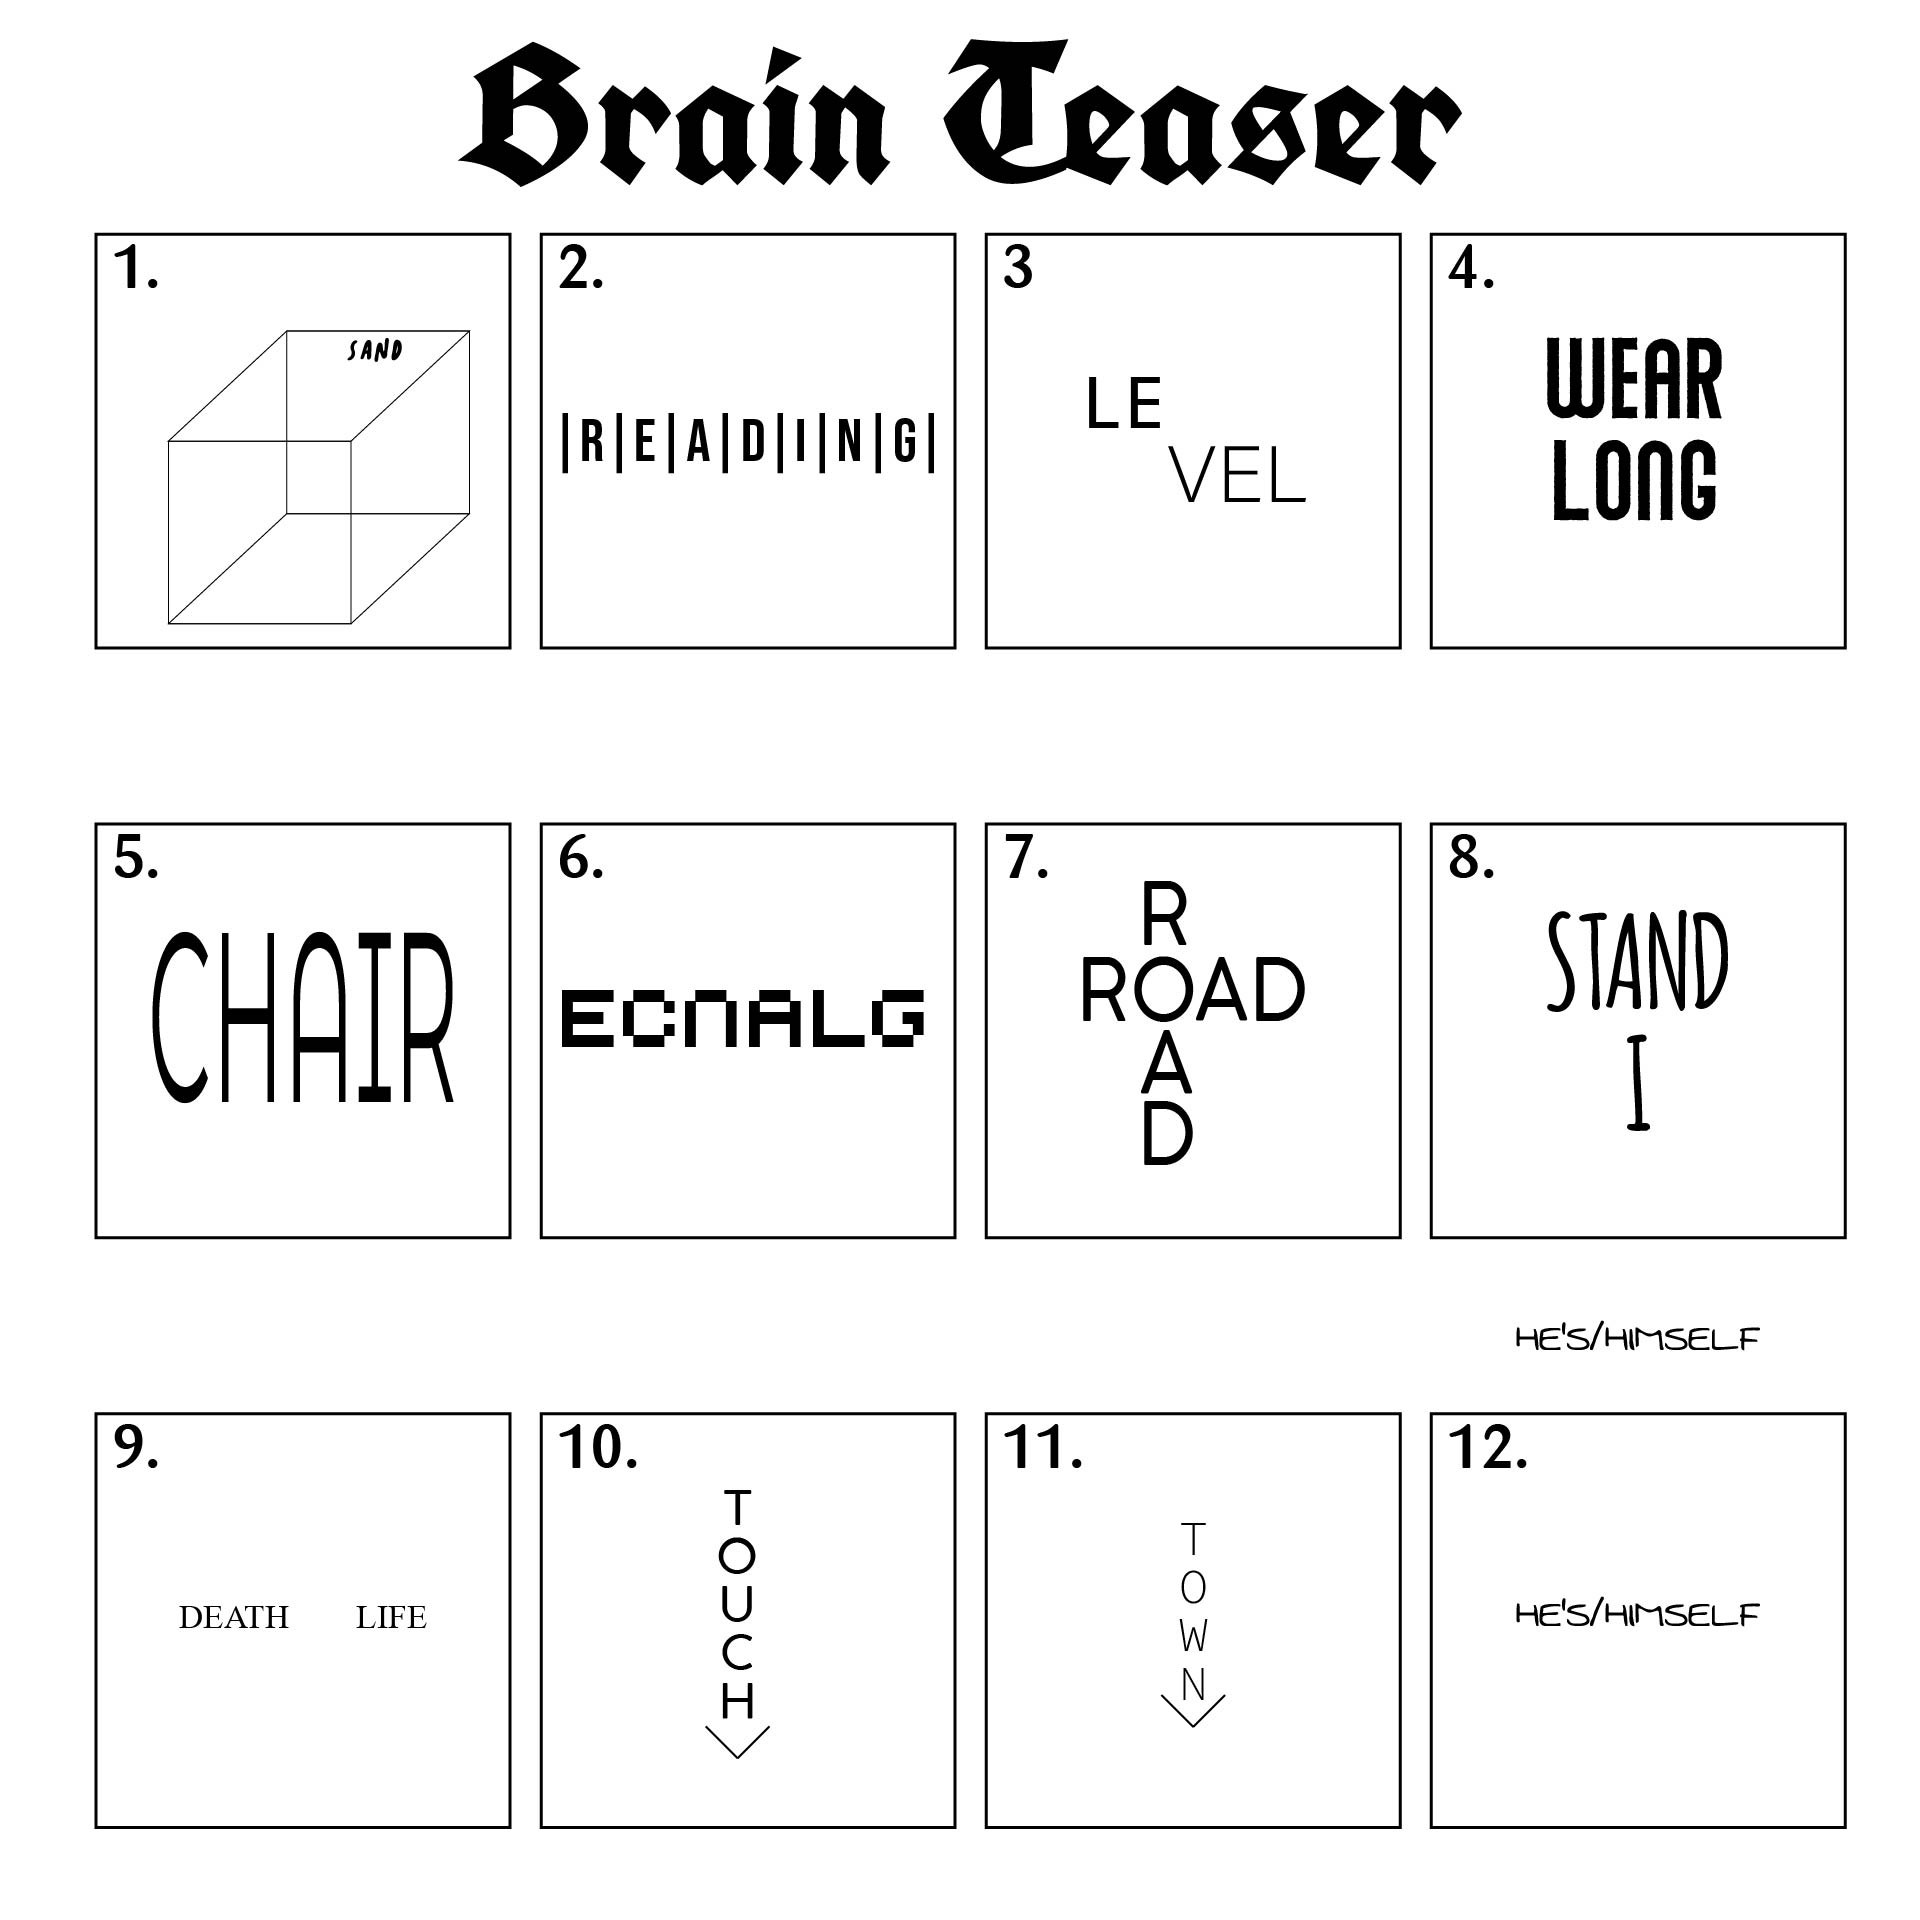 10 Best Brain Games Seniors Printable Worksheets Printablee Com